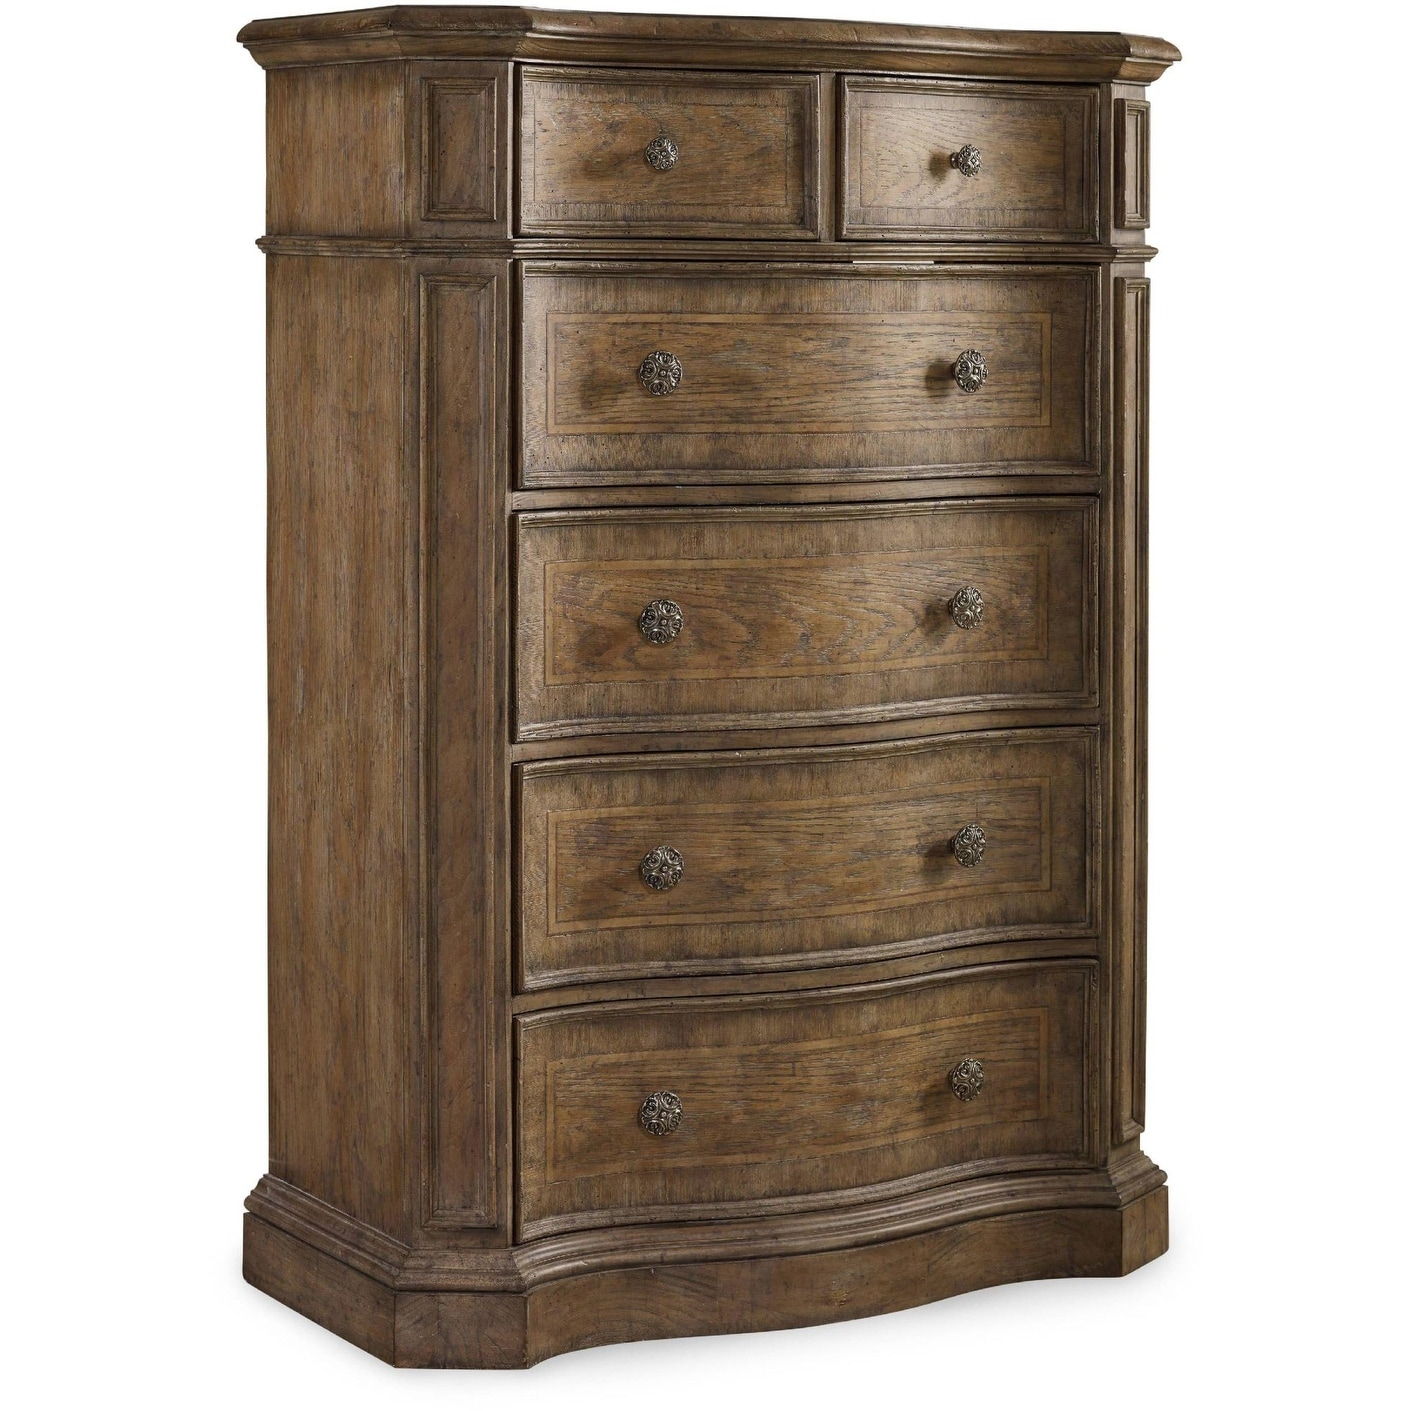 Shop Hooker Furniture 5291 90010 42 Wide 6 Drawer Poplar Wood